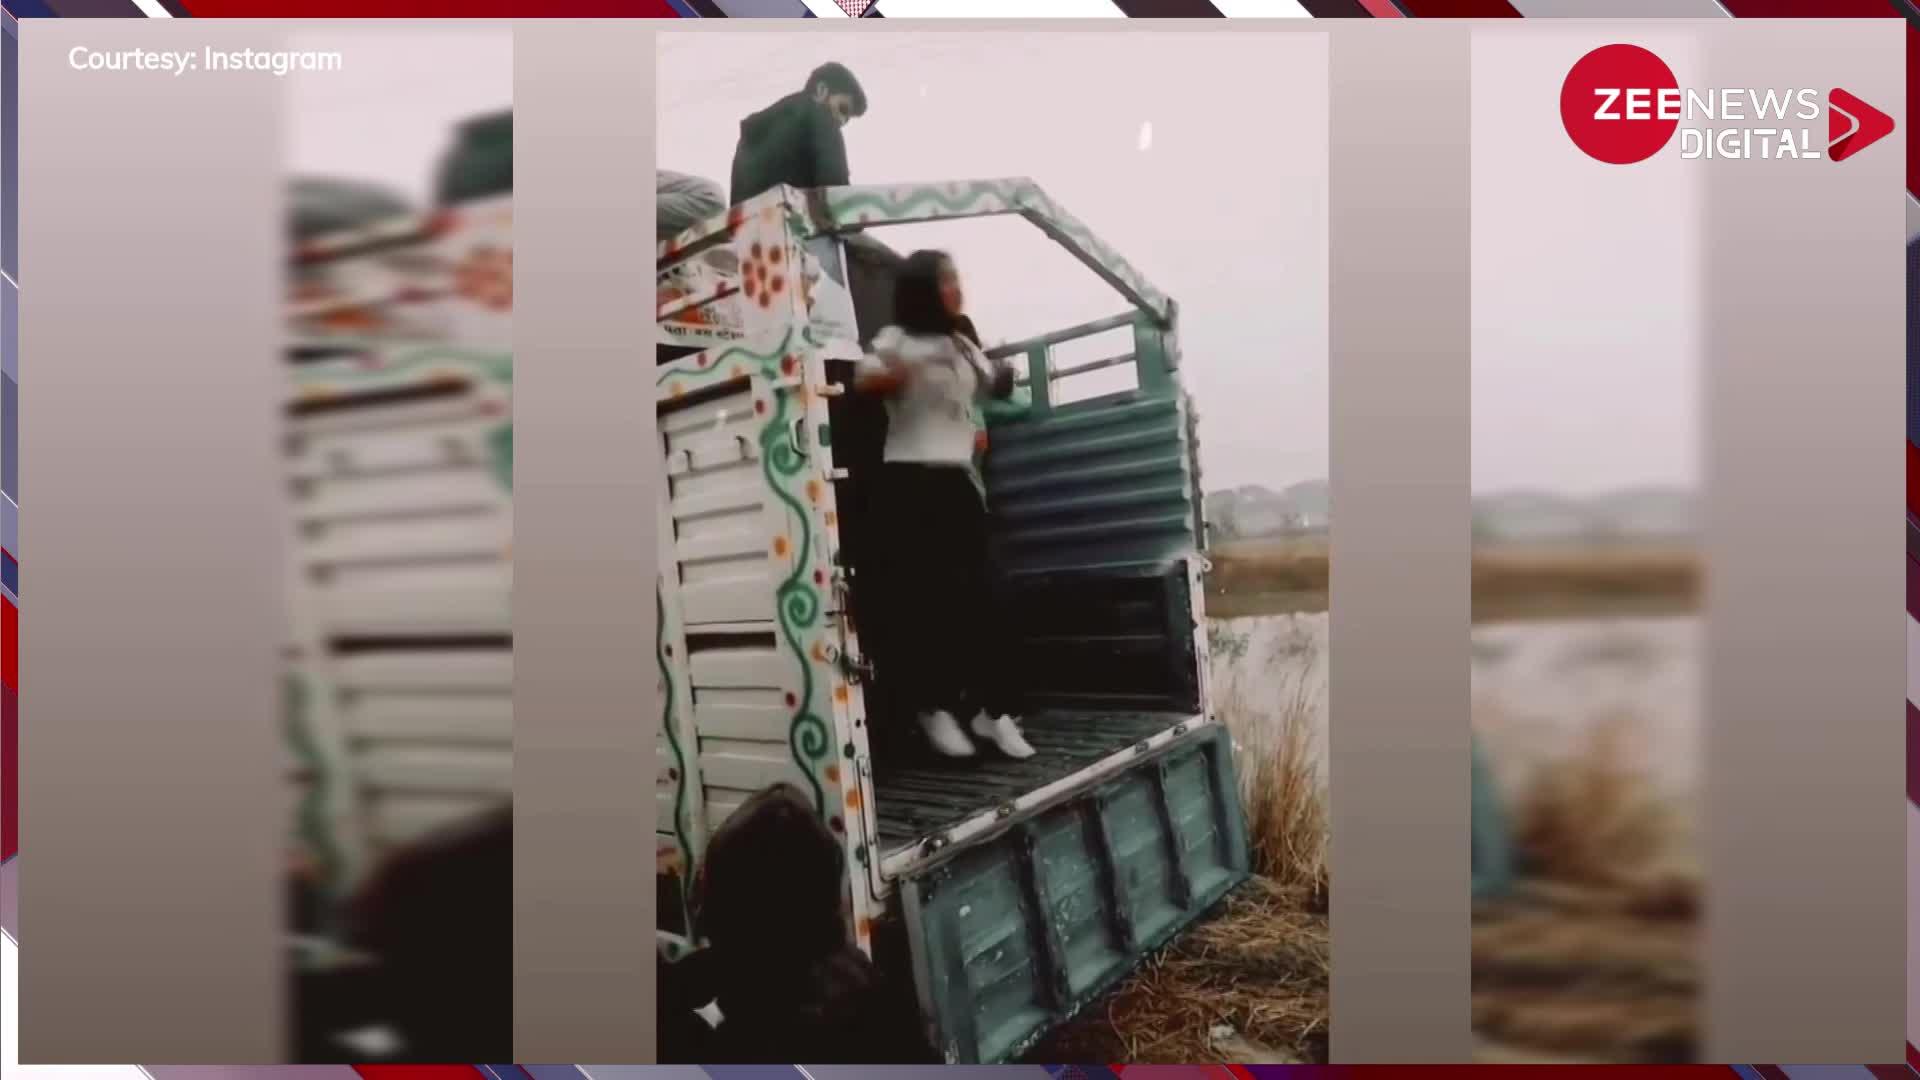 Viral Video: ट्रक पर चढ़कर 'पतली कमरिया' पर डांस कर रही थी पापा की परी, धड़ाम से ऐसे गिरी की टूट गई कमरिया...